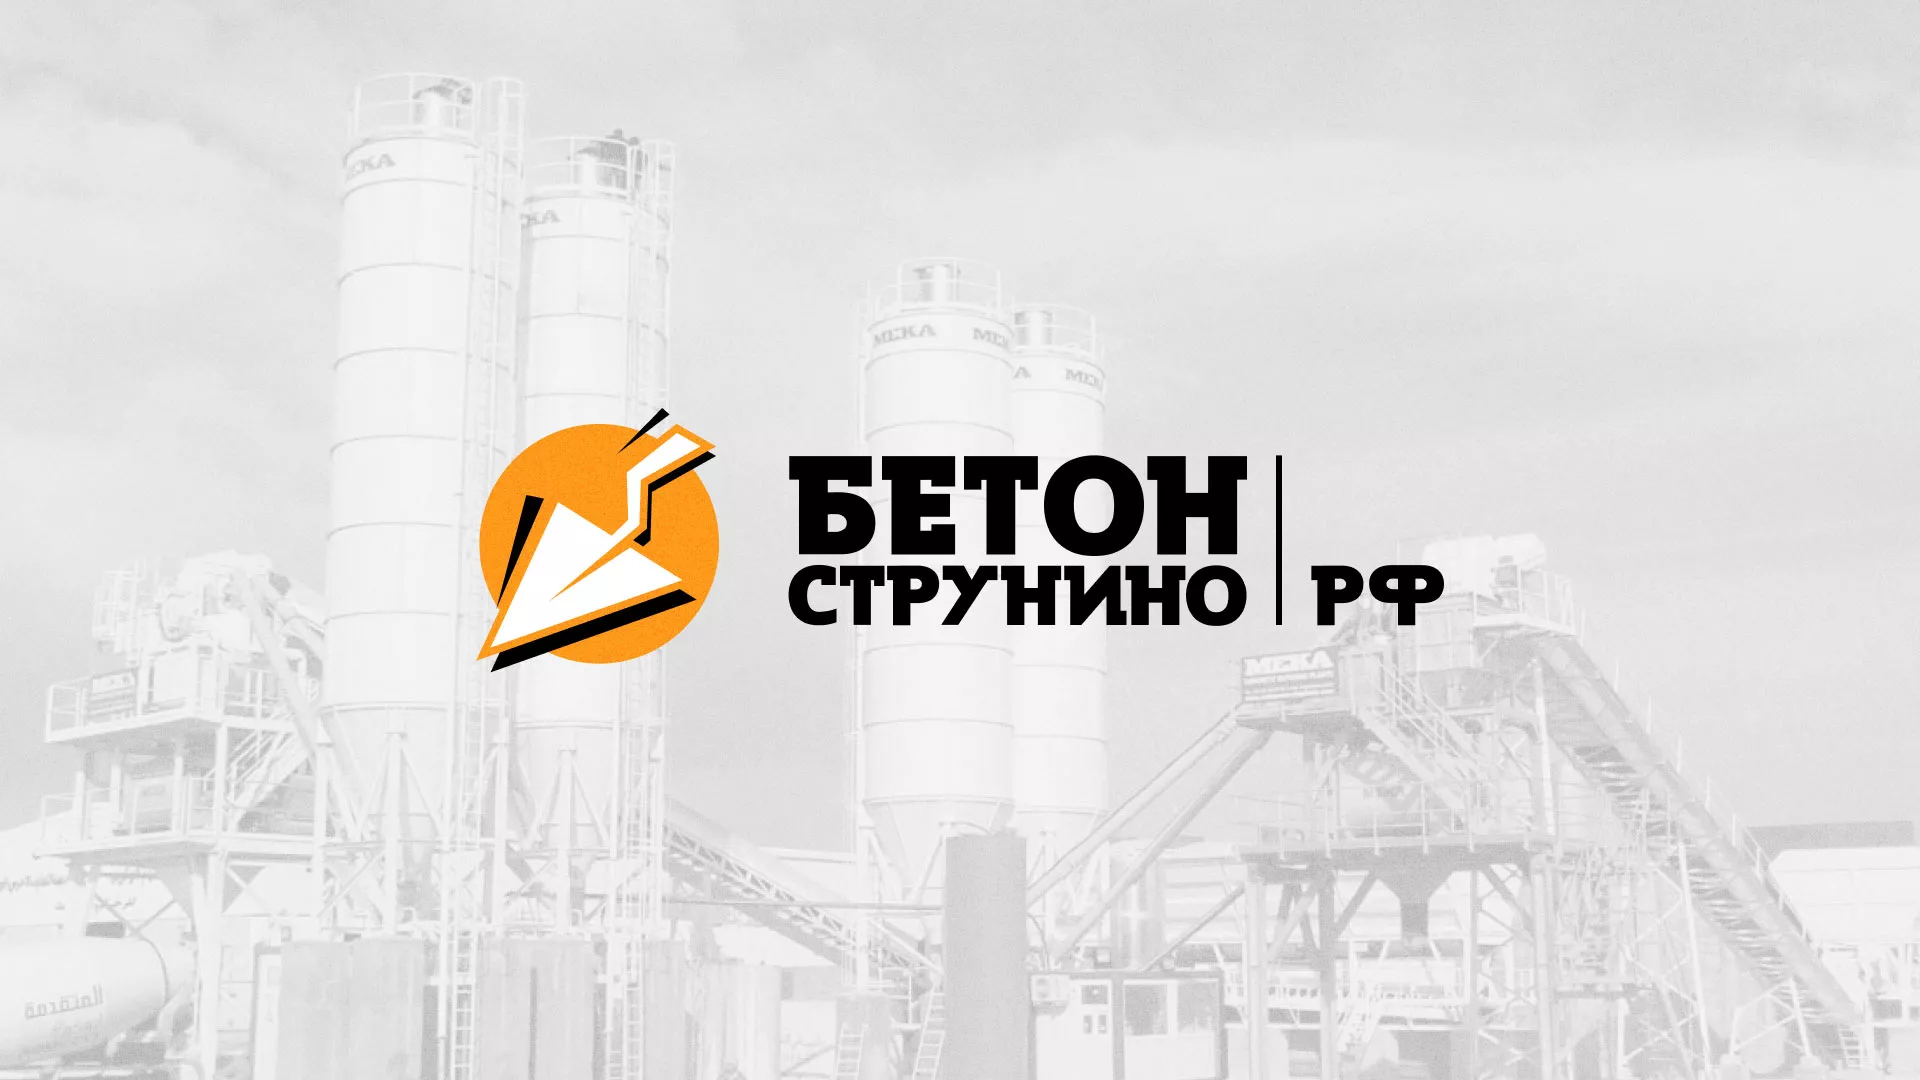 Разработка логотипа для бетонного завода в Звенигово